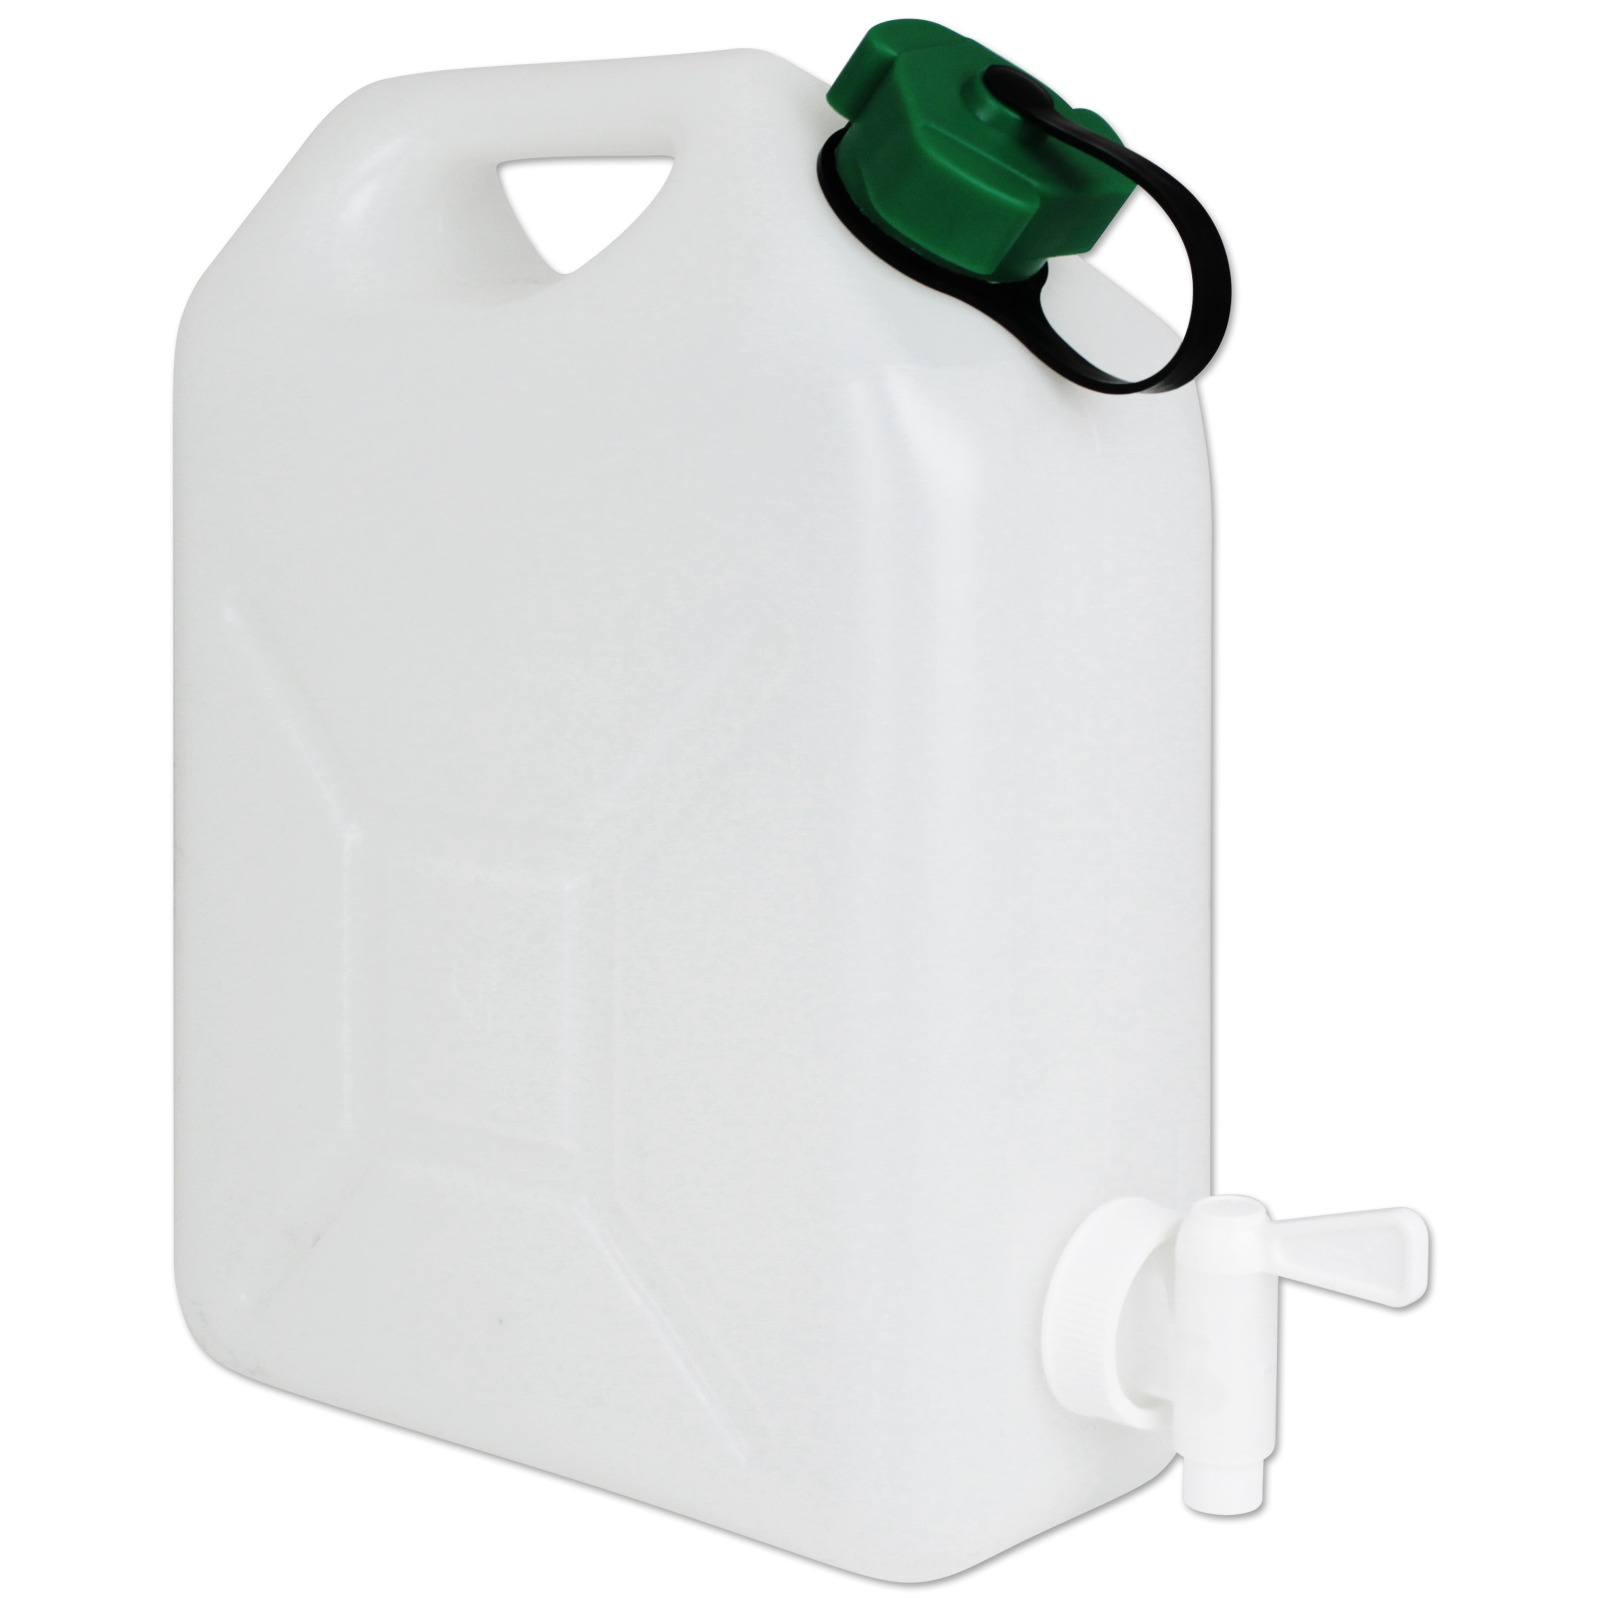 Cubitainer 5l, faltbarer Wasserkanister mit Deckel und Zapfhahn, € 6,90